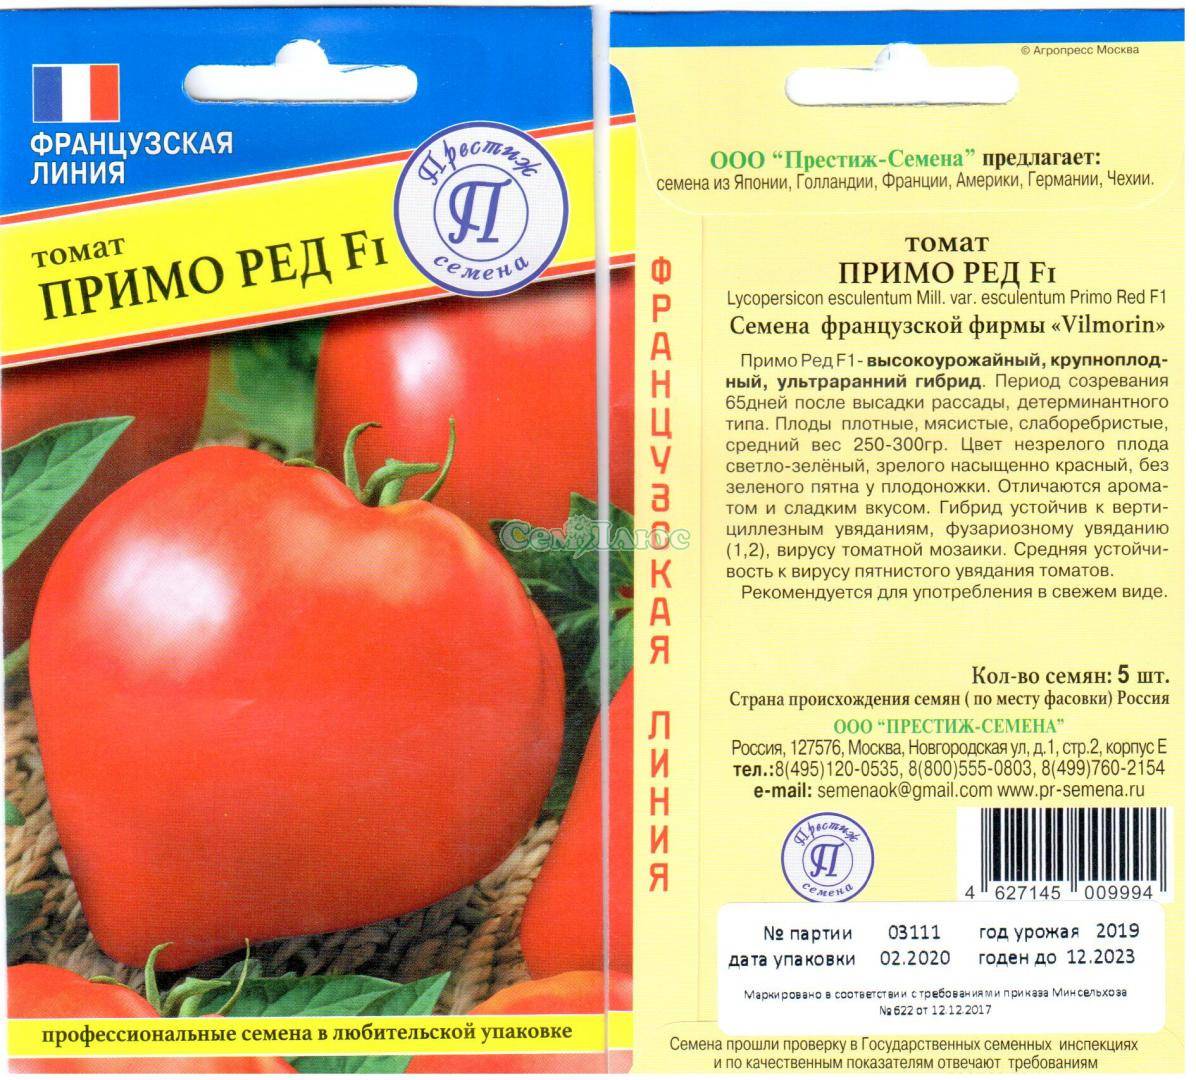 Томат аврора (f1): описание сорта помидоров, отзывы об их выращивании от огородников, преимущества и недостатки